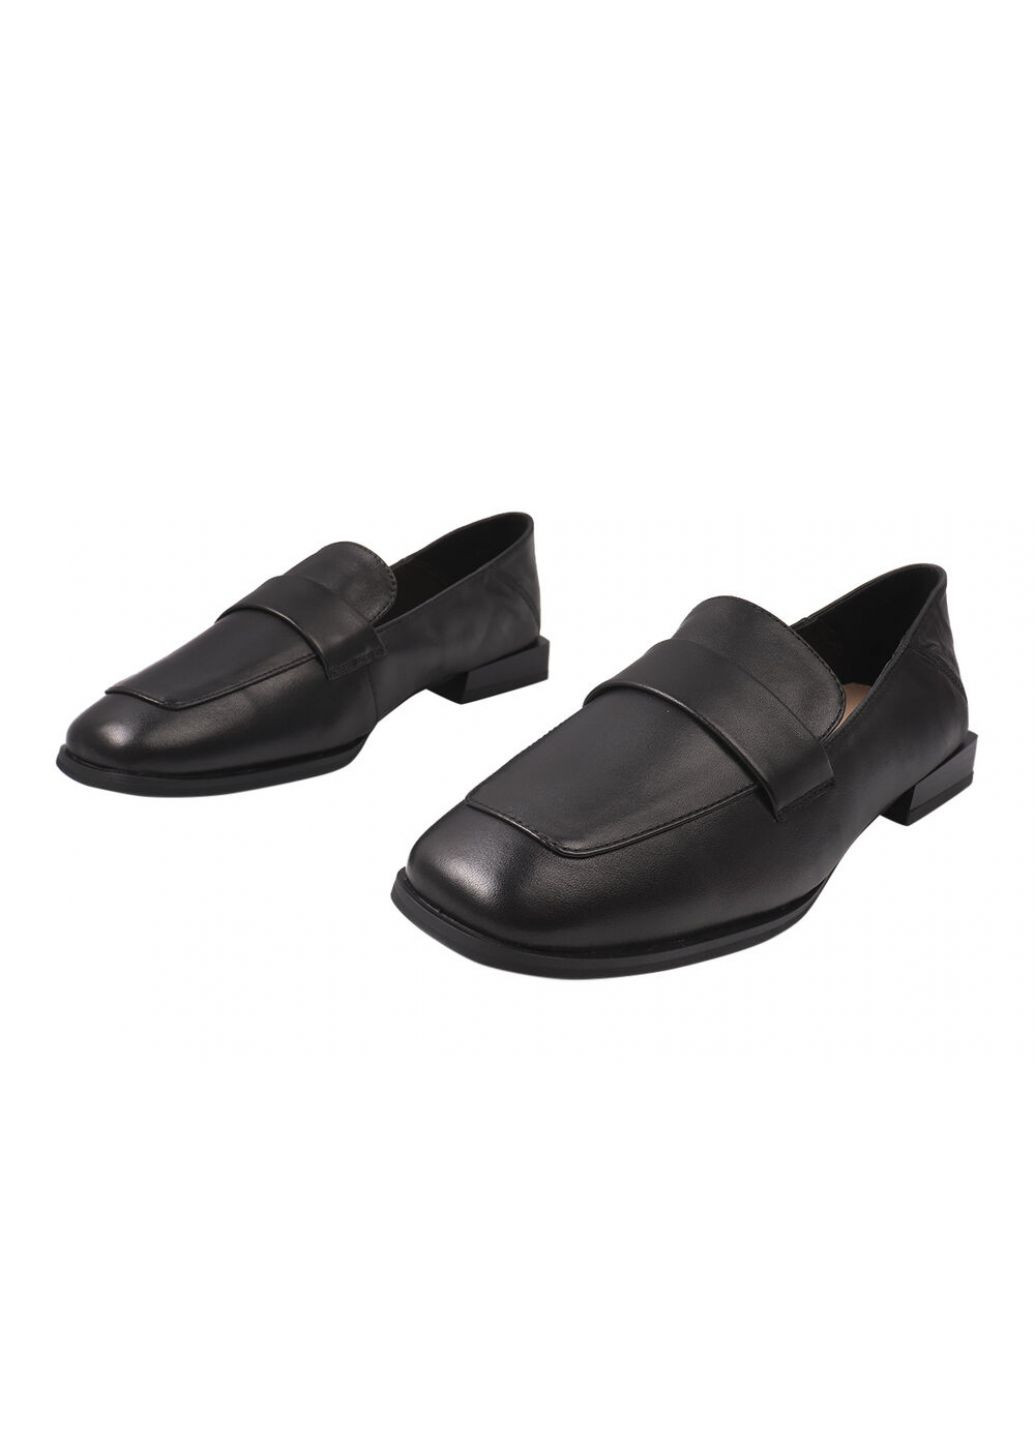 Туфлі жіночі з натуральної шкіри, на низькому ходу, чорні, Berkonty 324-21dtc (257426121)